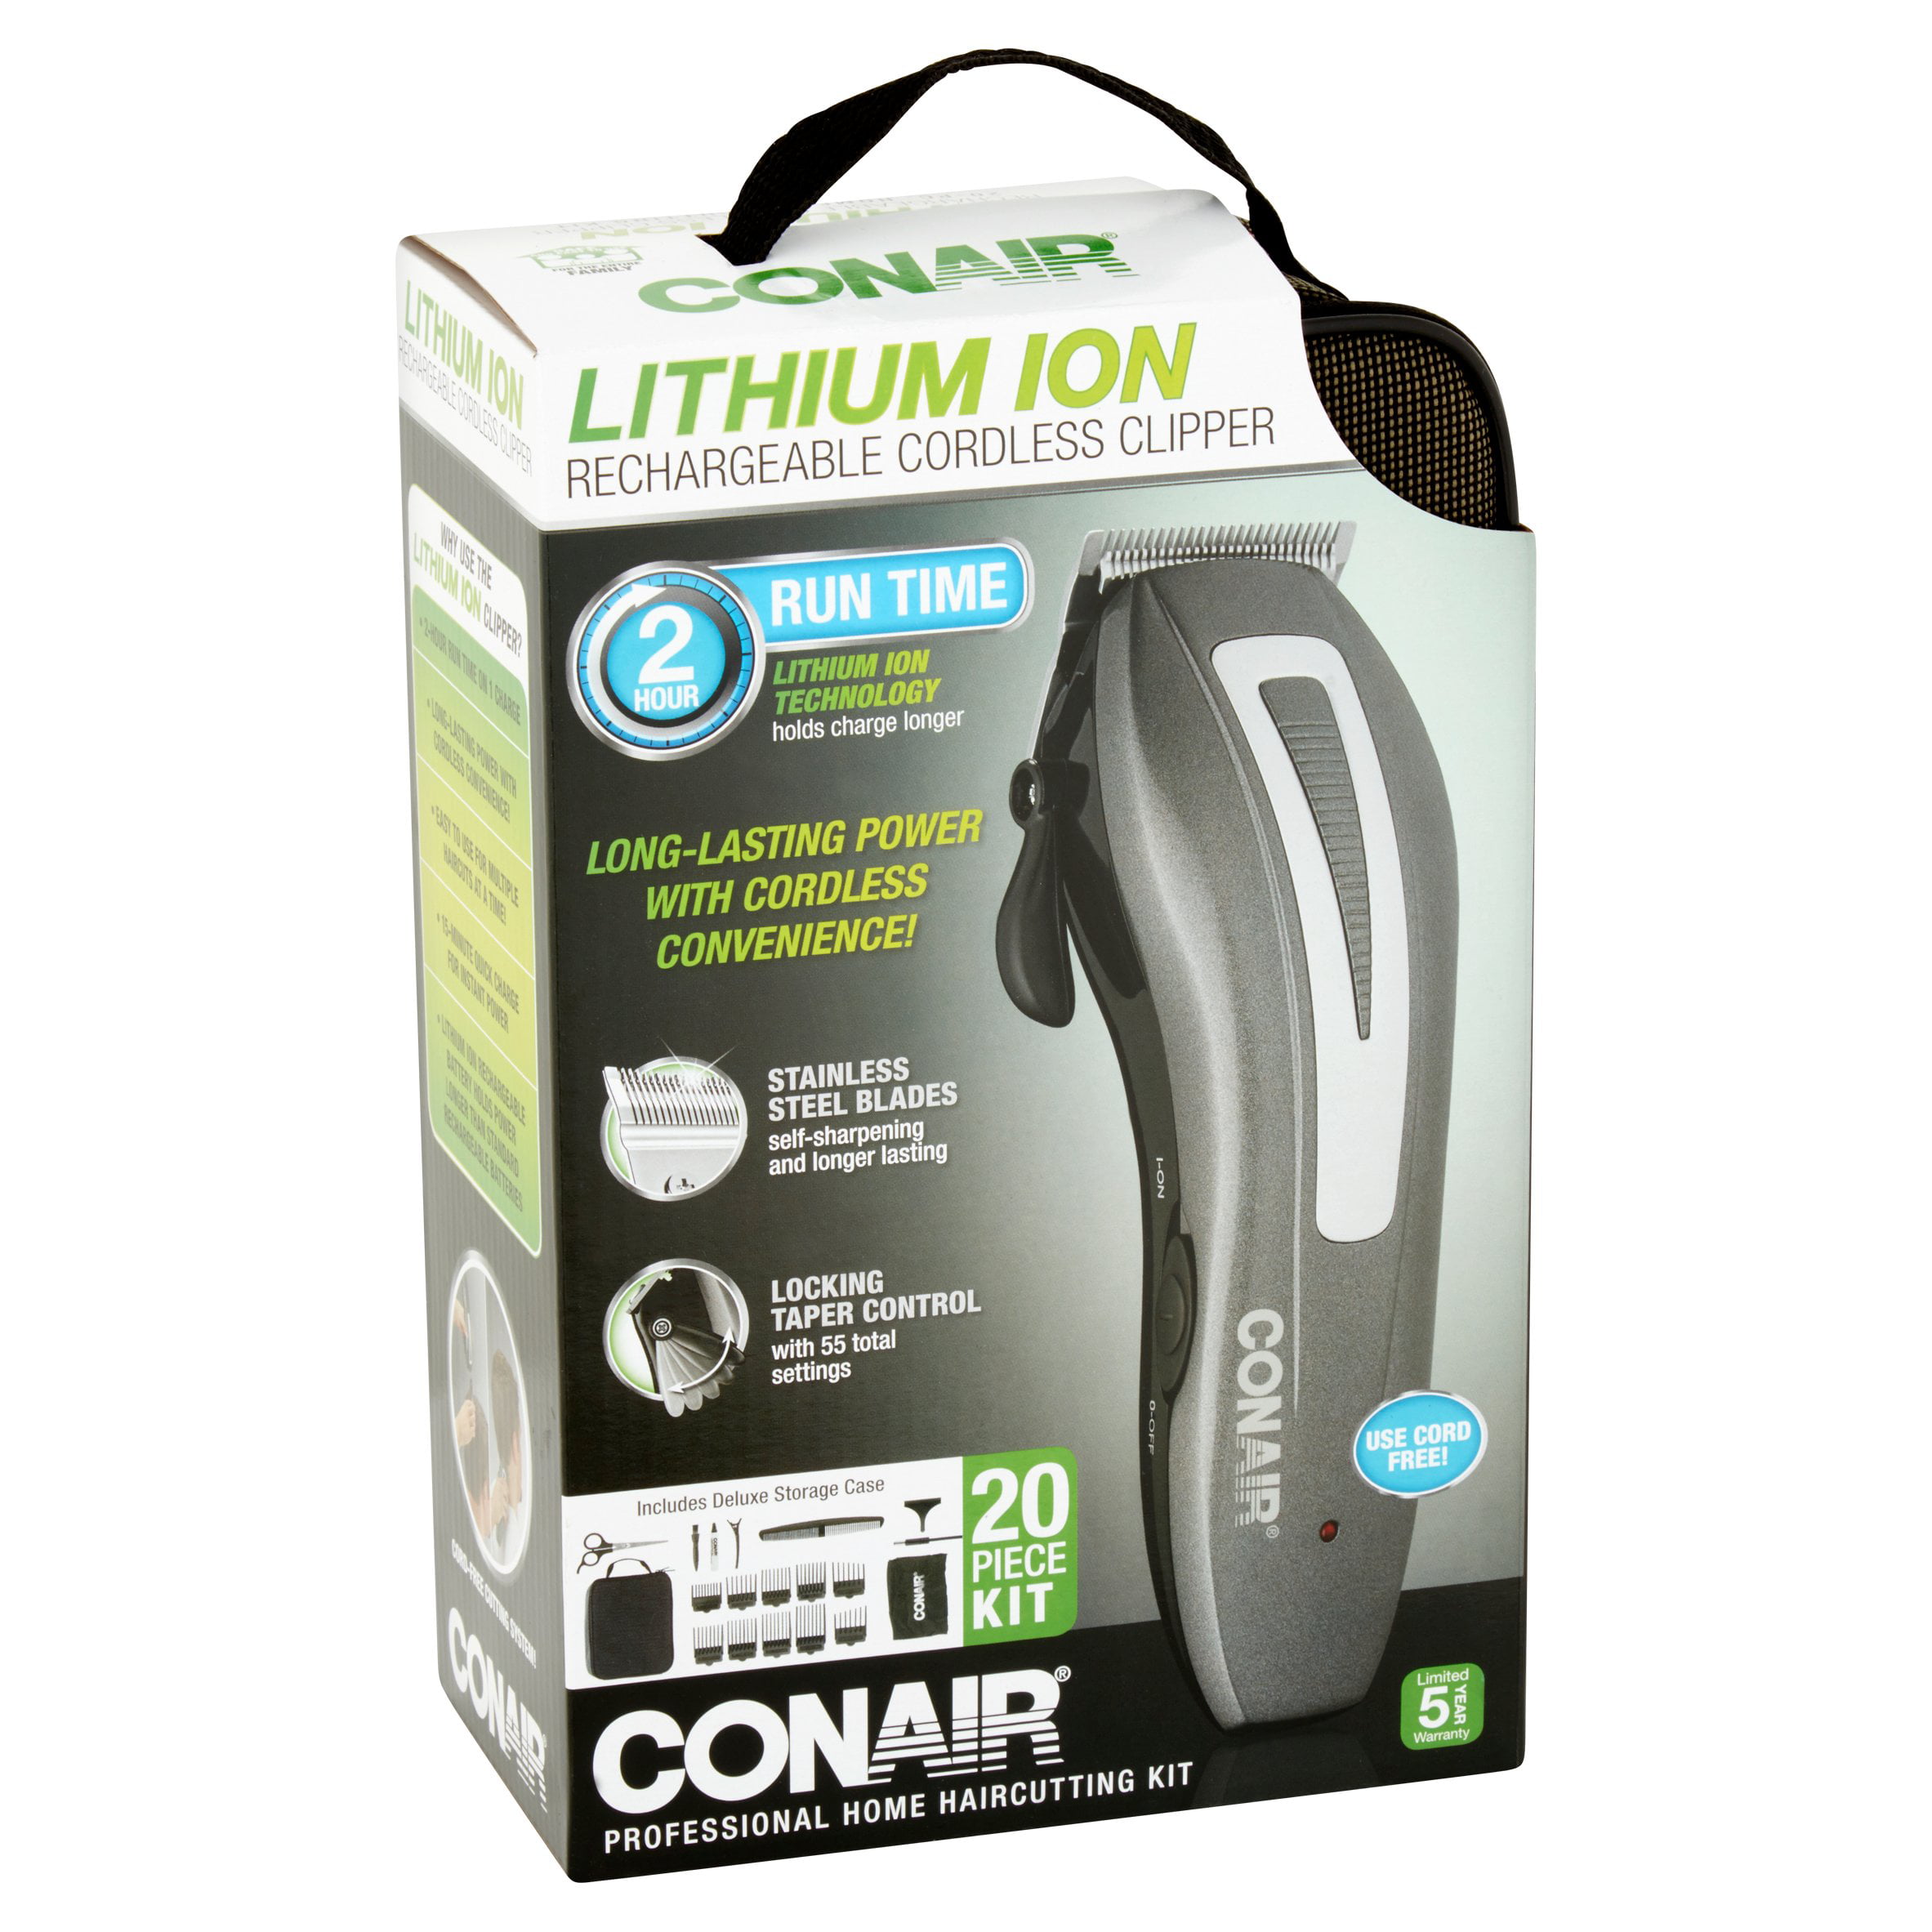 conair even cut lithium ion review